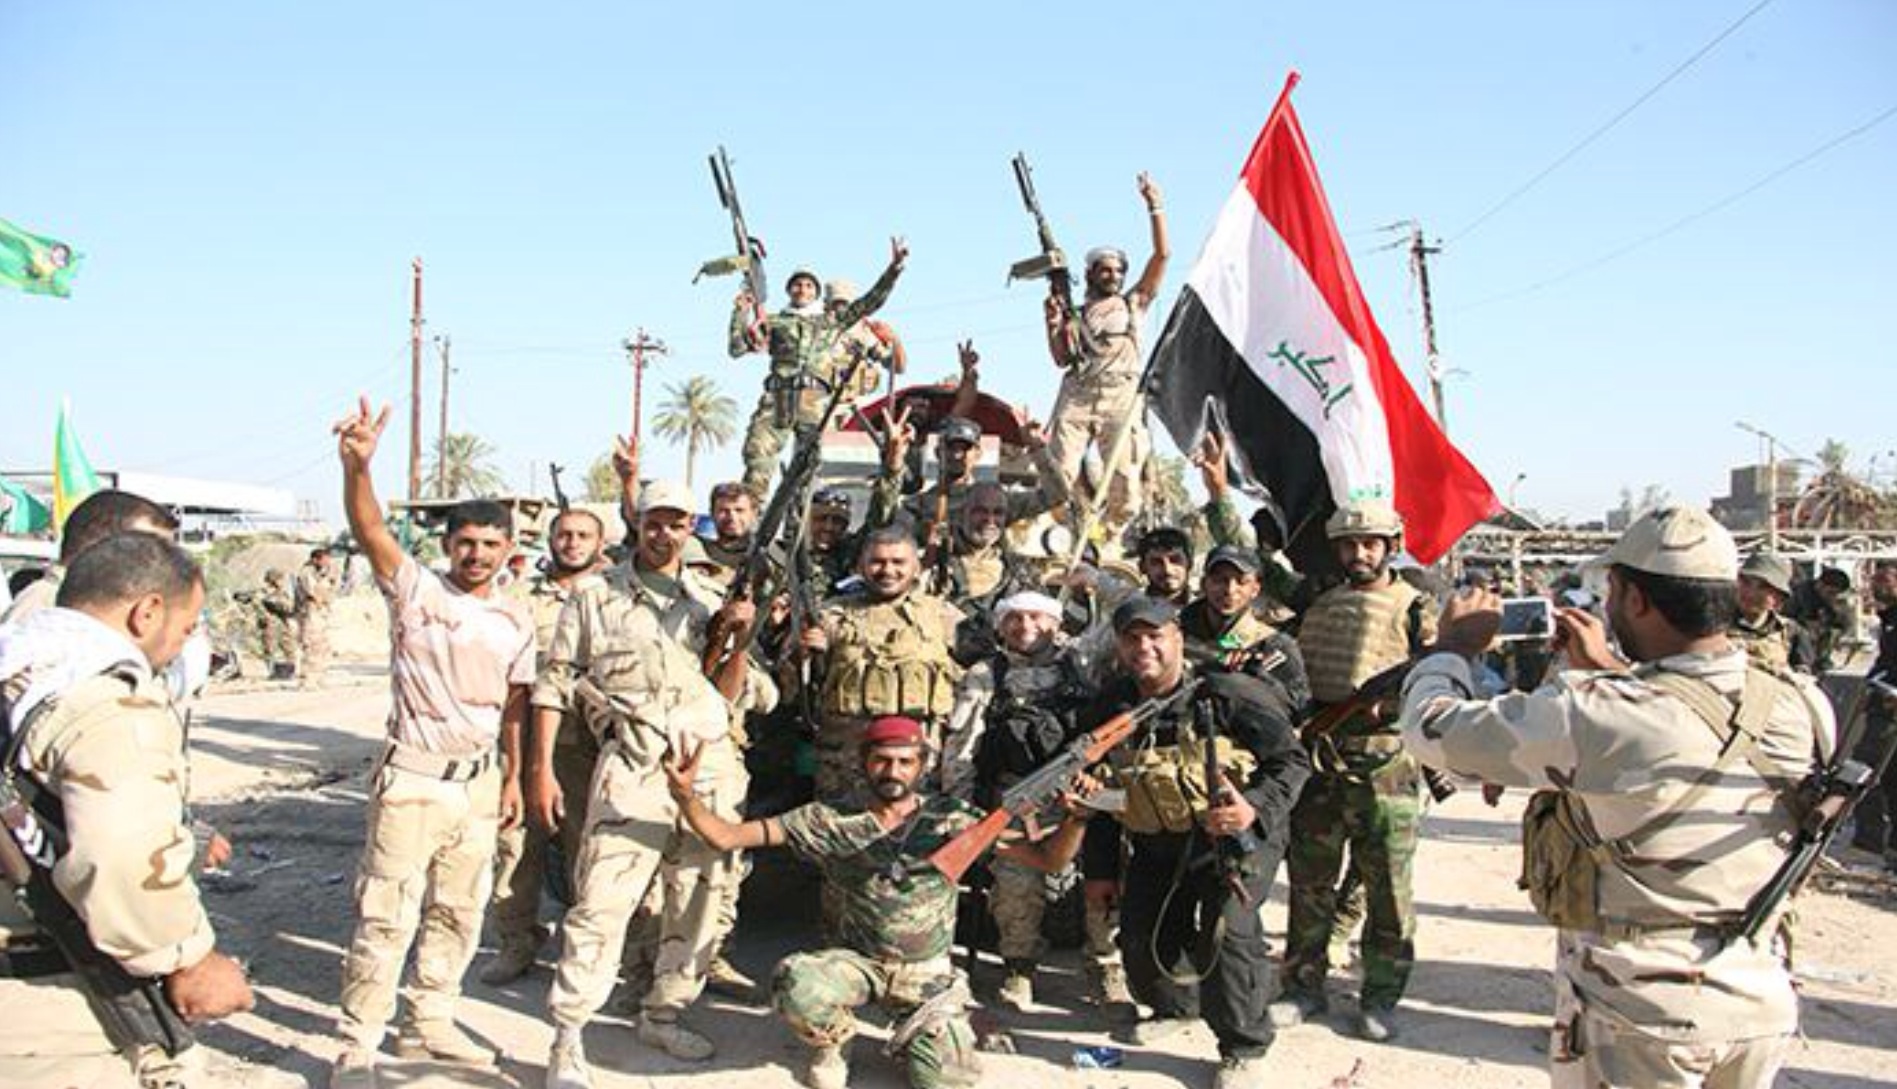 العراقيون الذين يقاتلون “داعش” يظهرون وحدة تبدو غائبة عن بال ساستهم